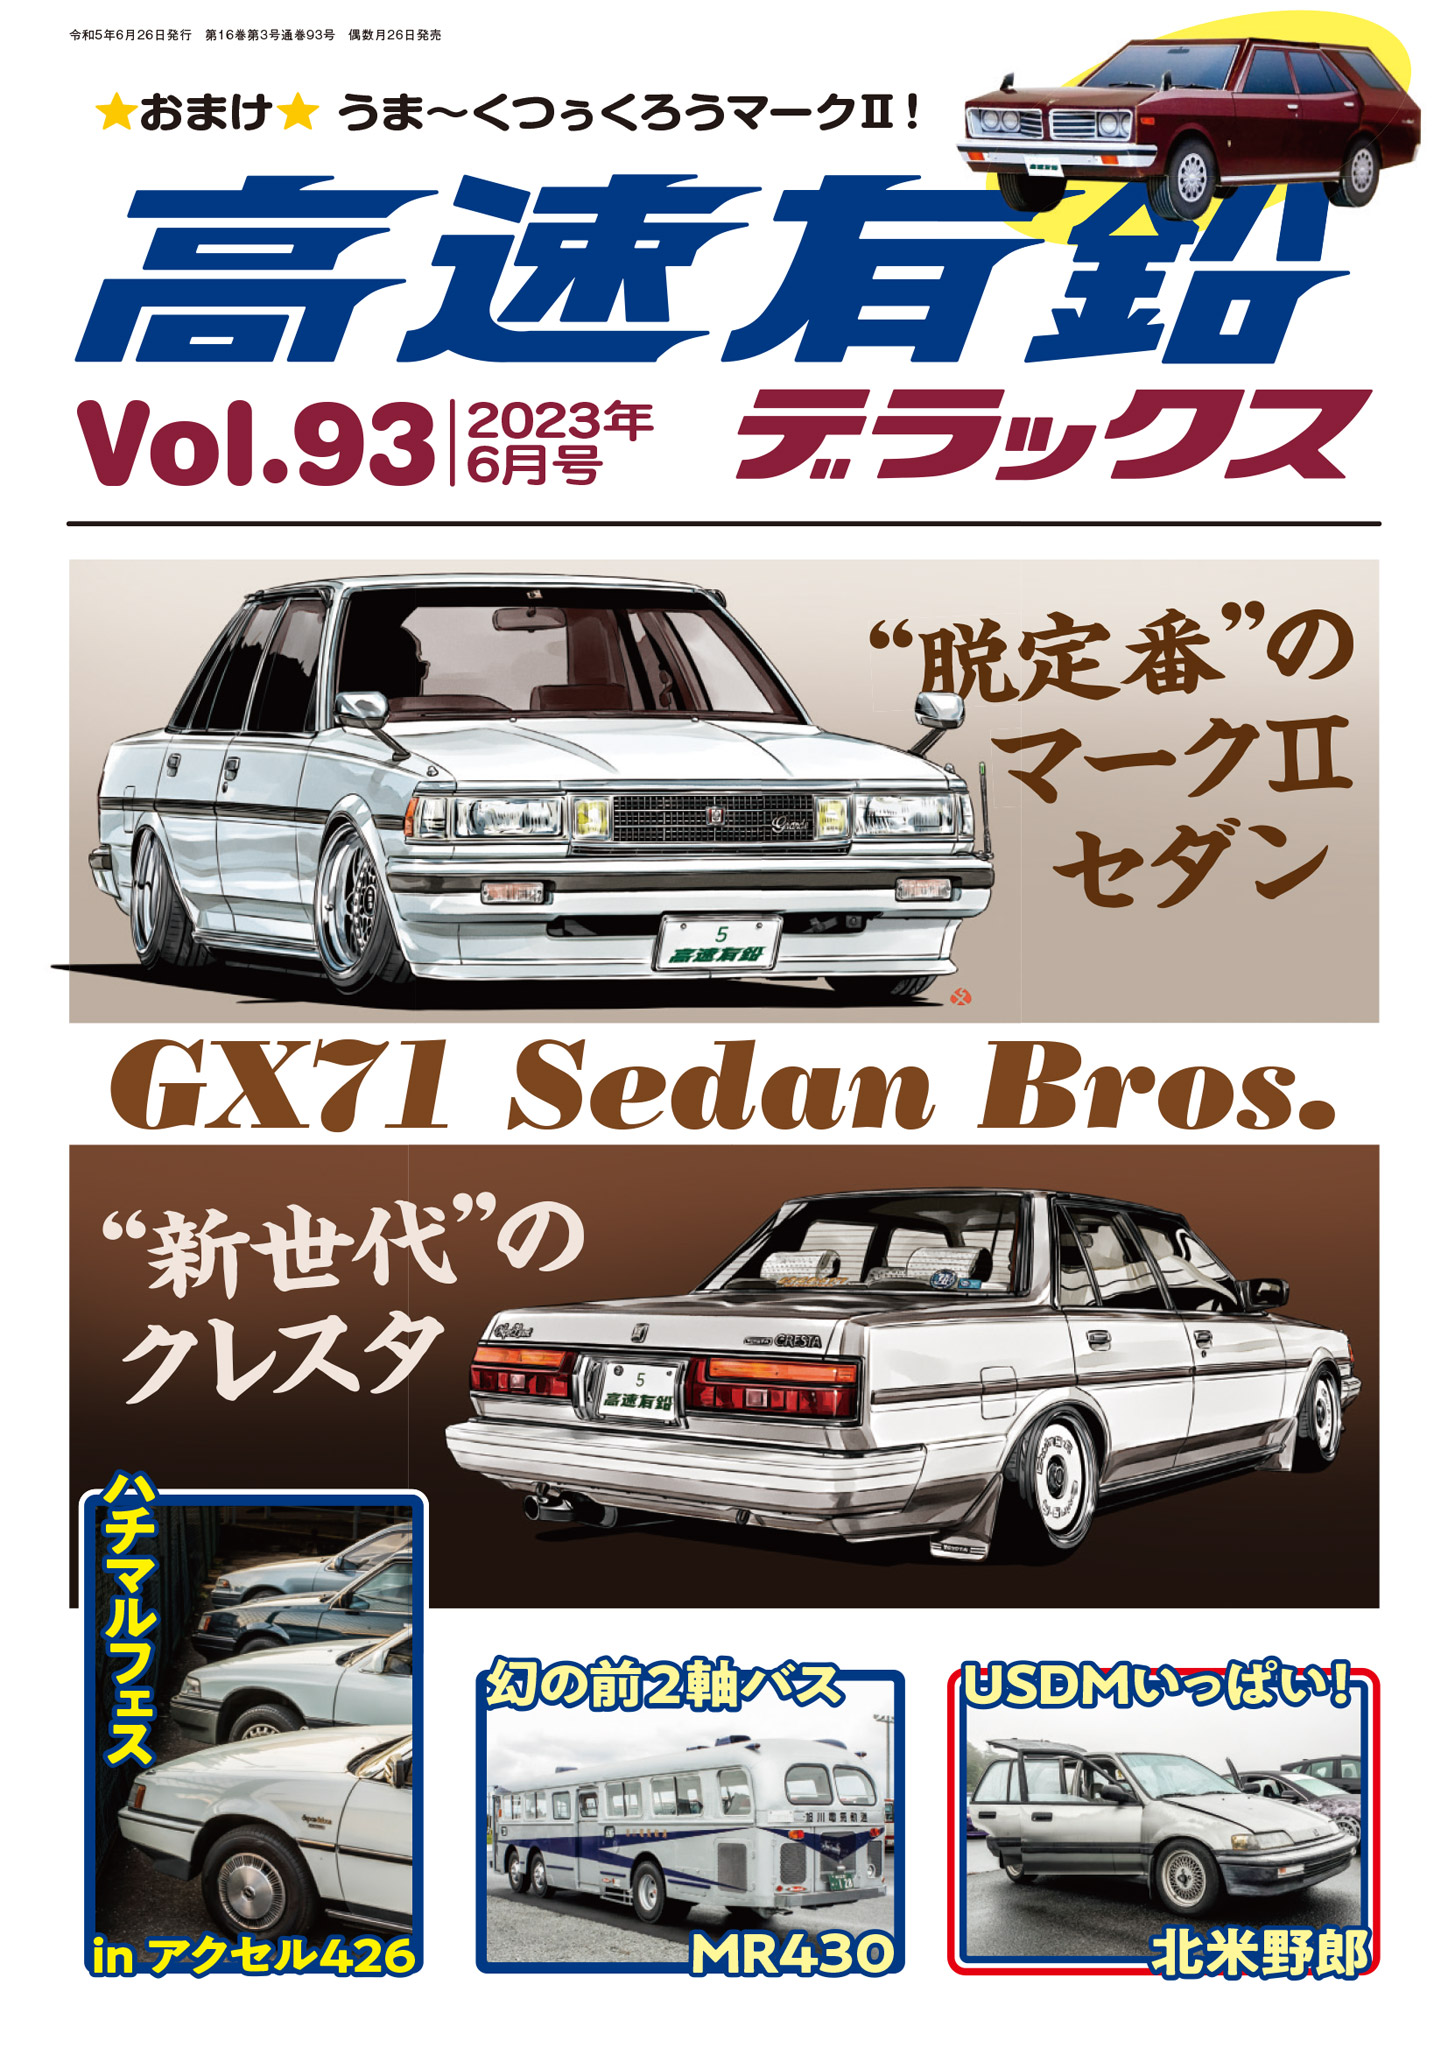 高速有鉛デラックス Vol.31〜Vol.50 旧車 ○スーパーSALE○ セール期間